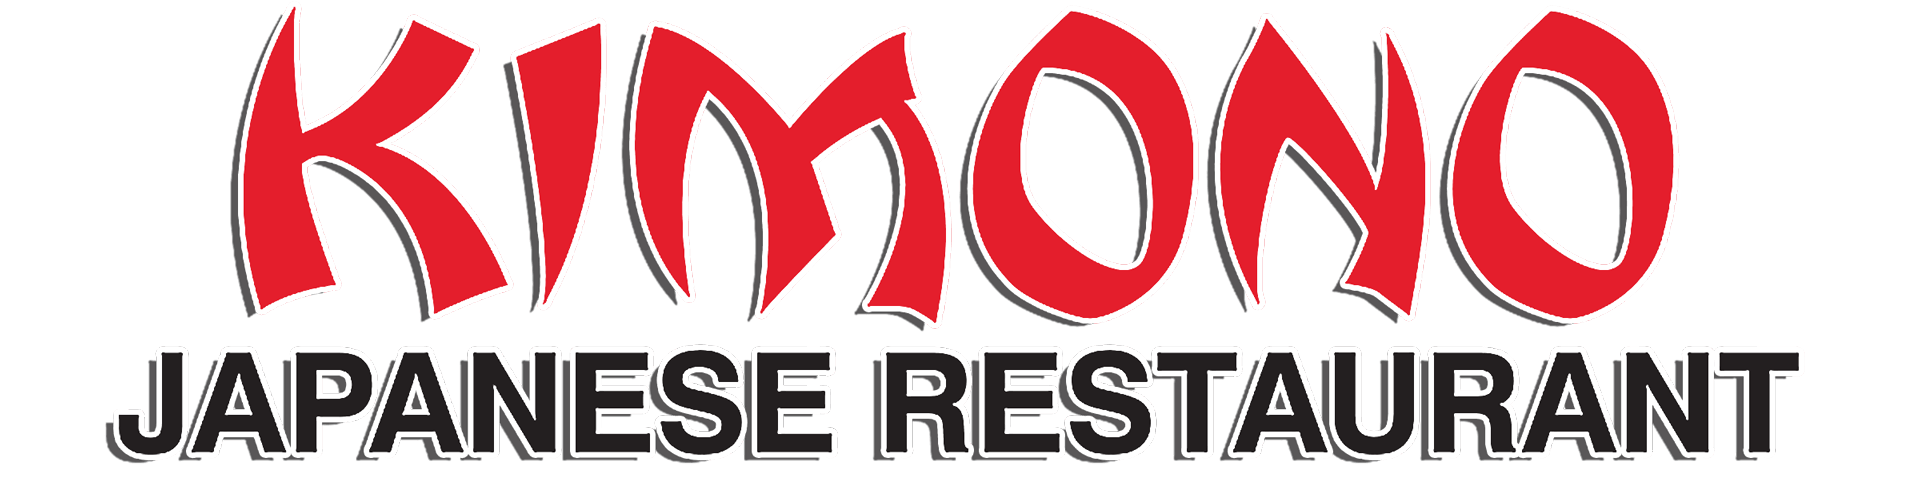 Cool Japanese Restaurant Logo - Kimono Japanese Restaurant